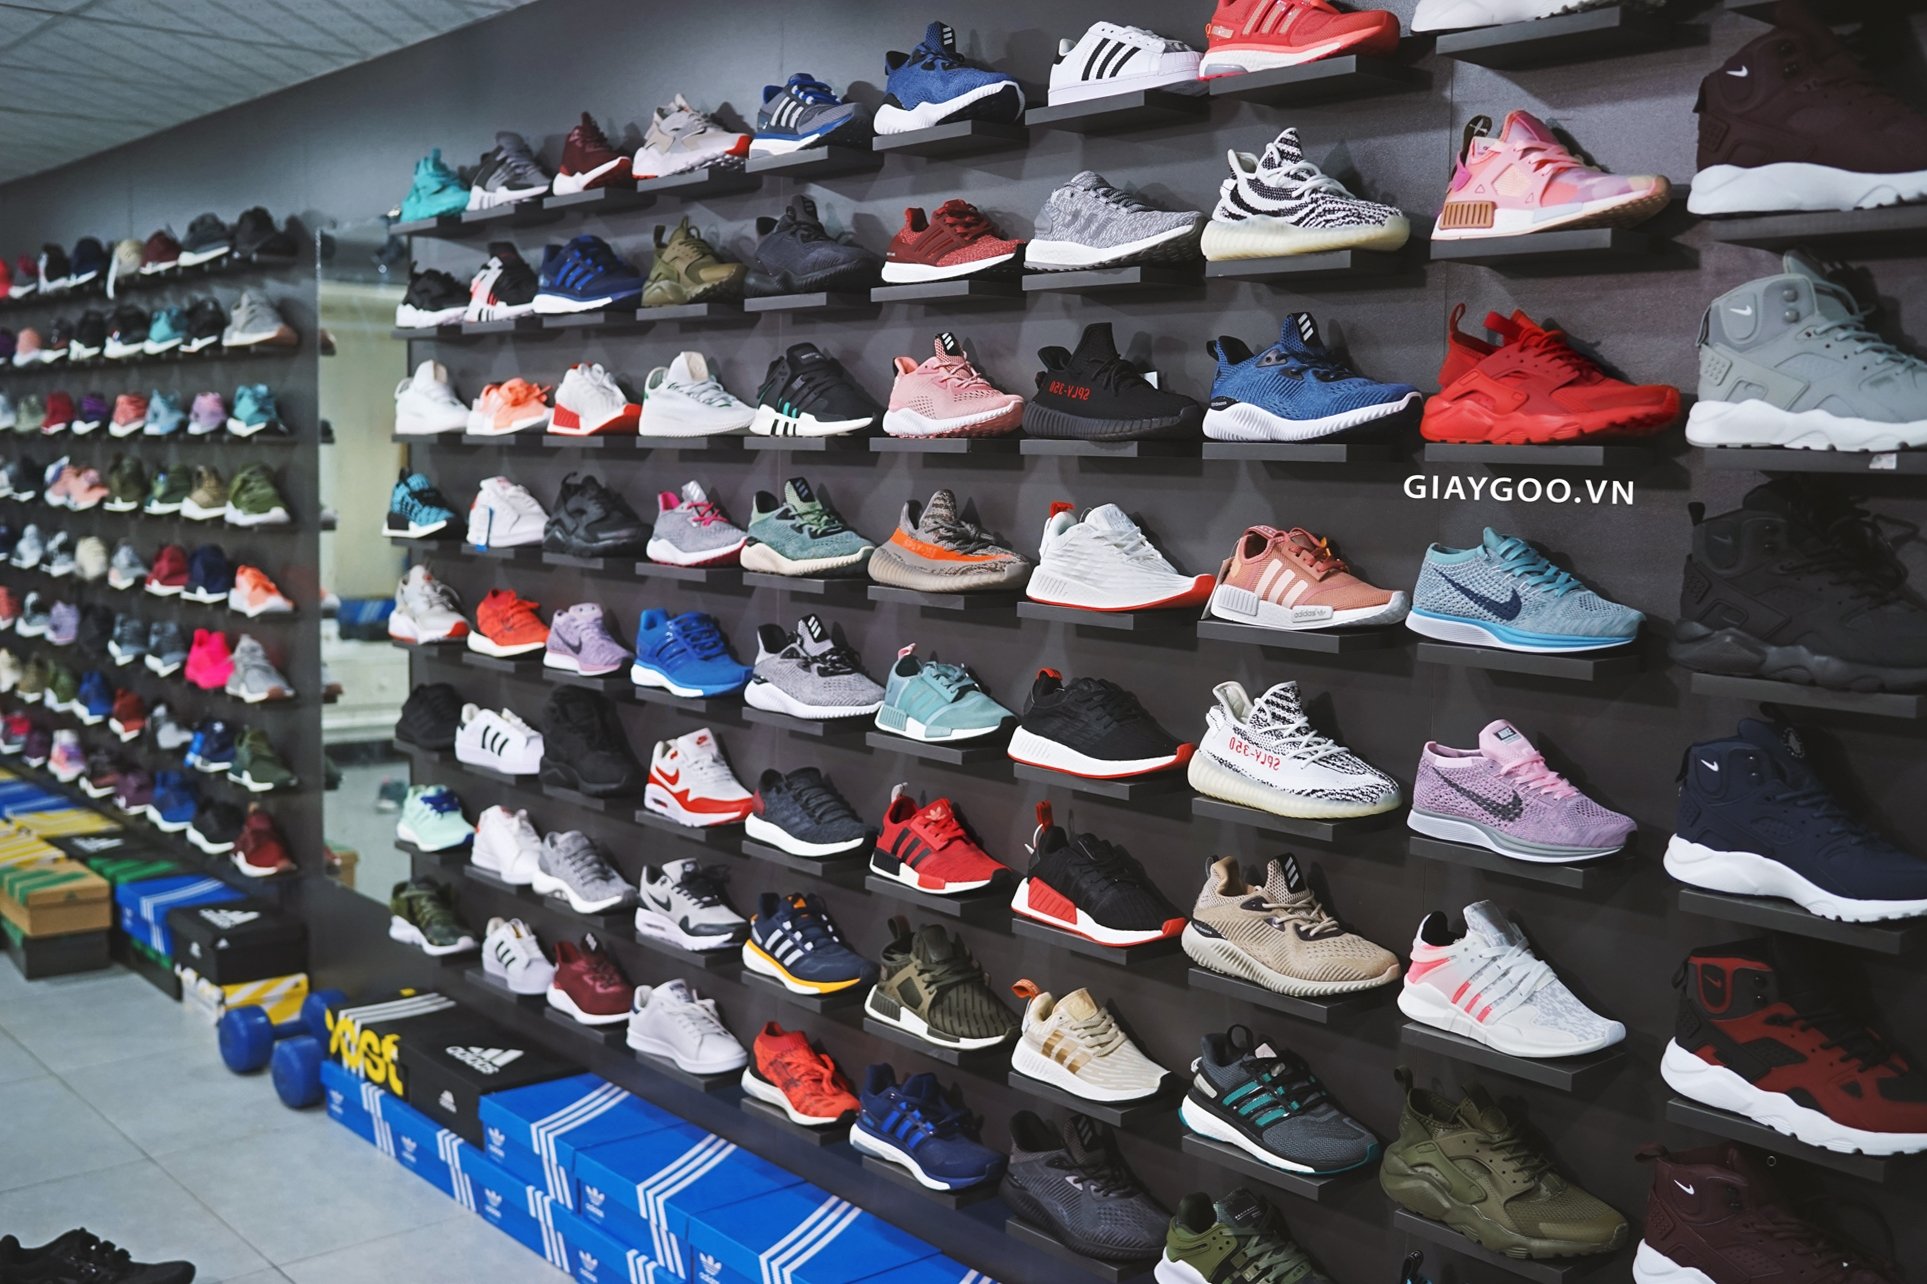 shop giày thể thao adidas